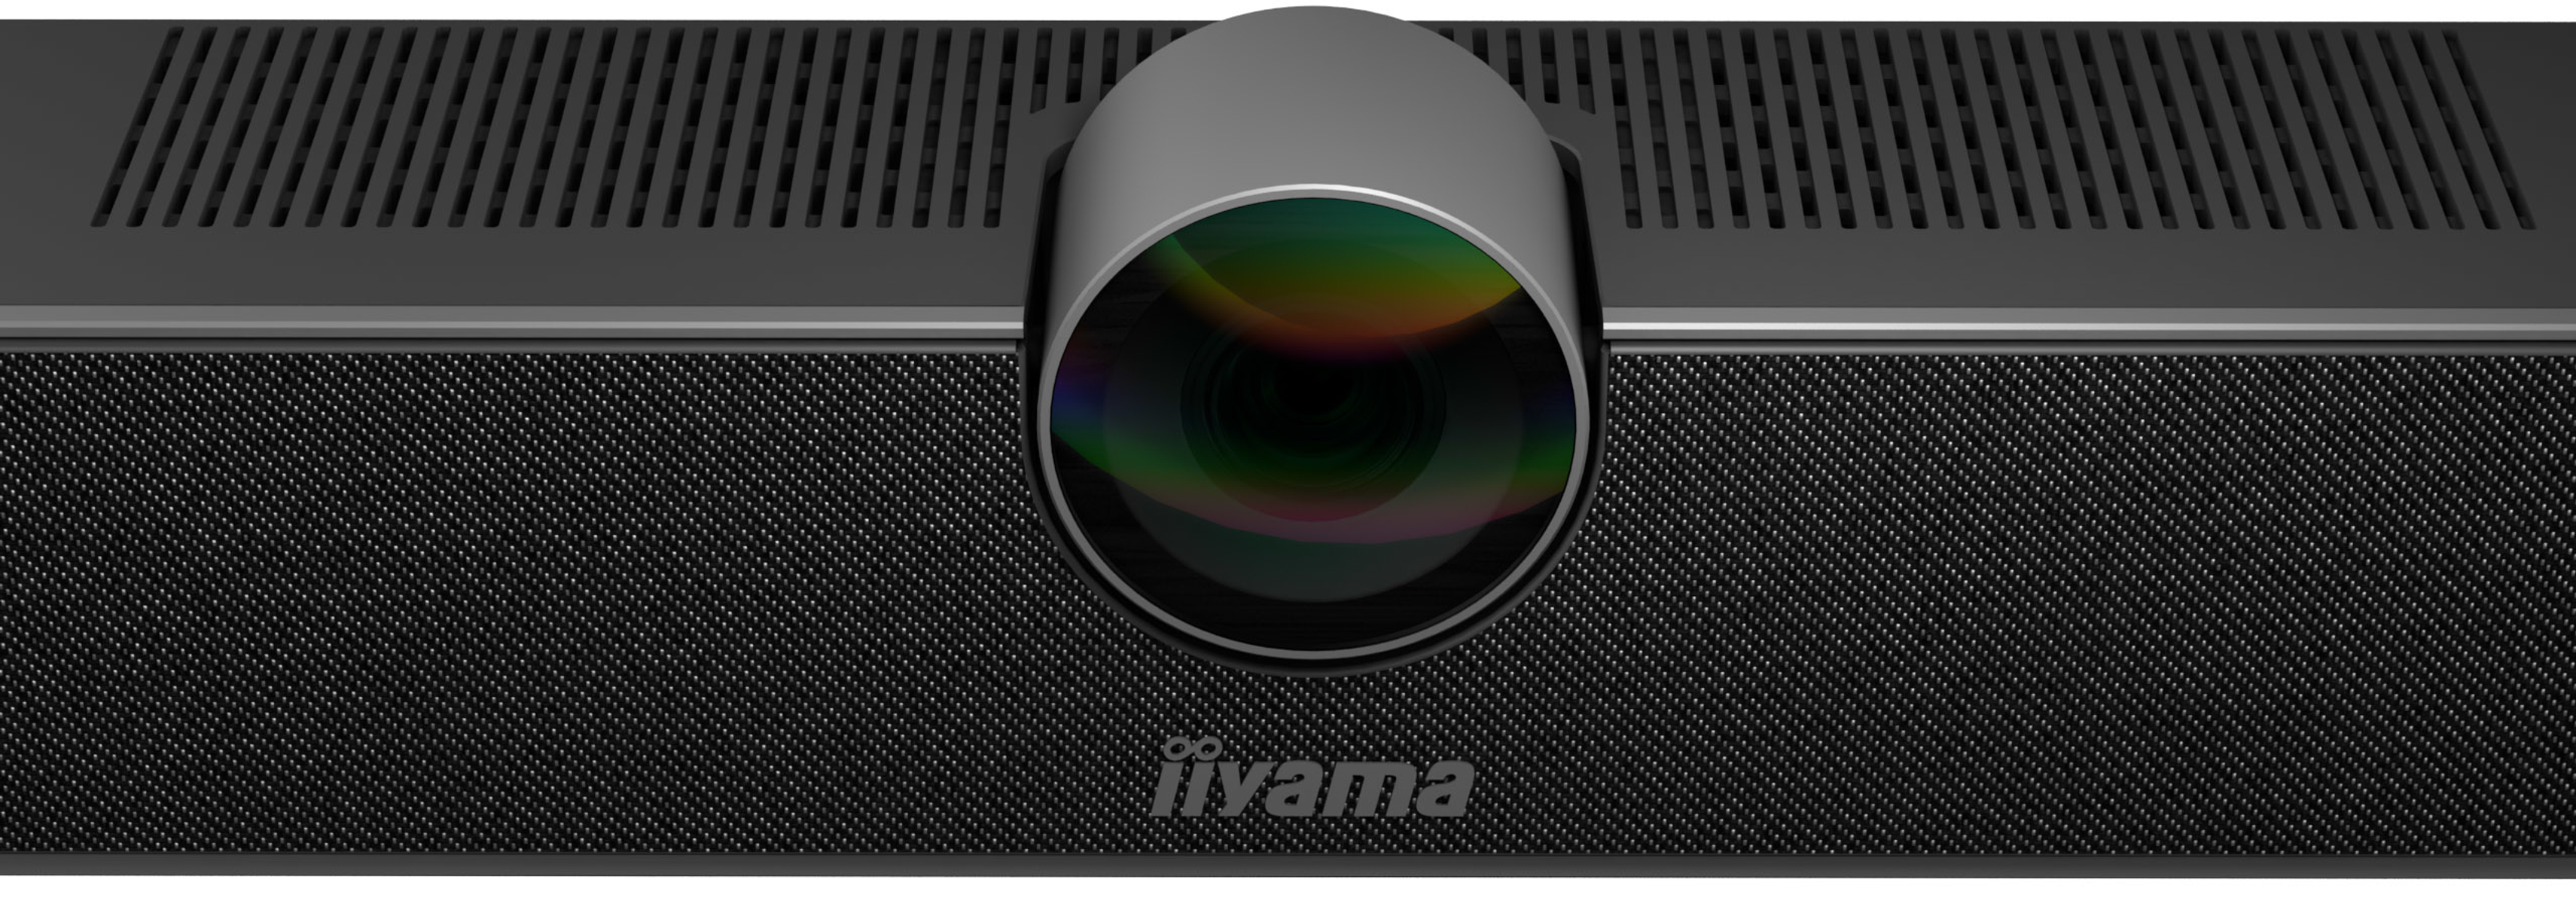 IIYAMA UC Webcam CAM120ULB-1